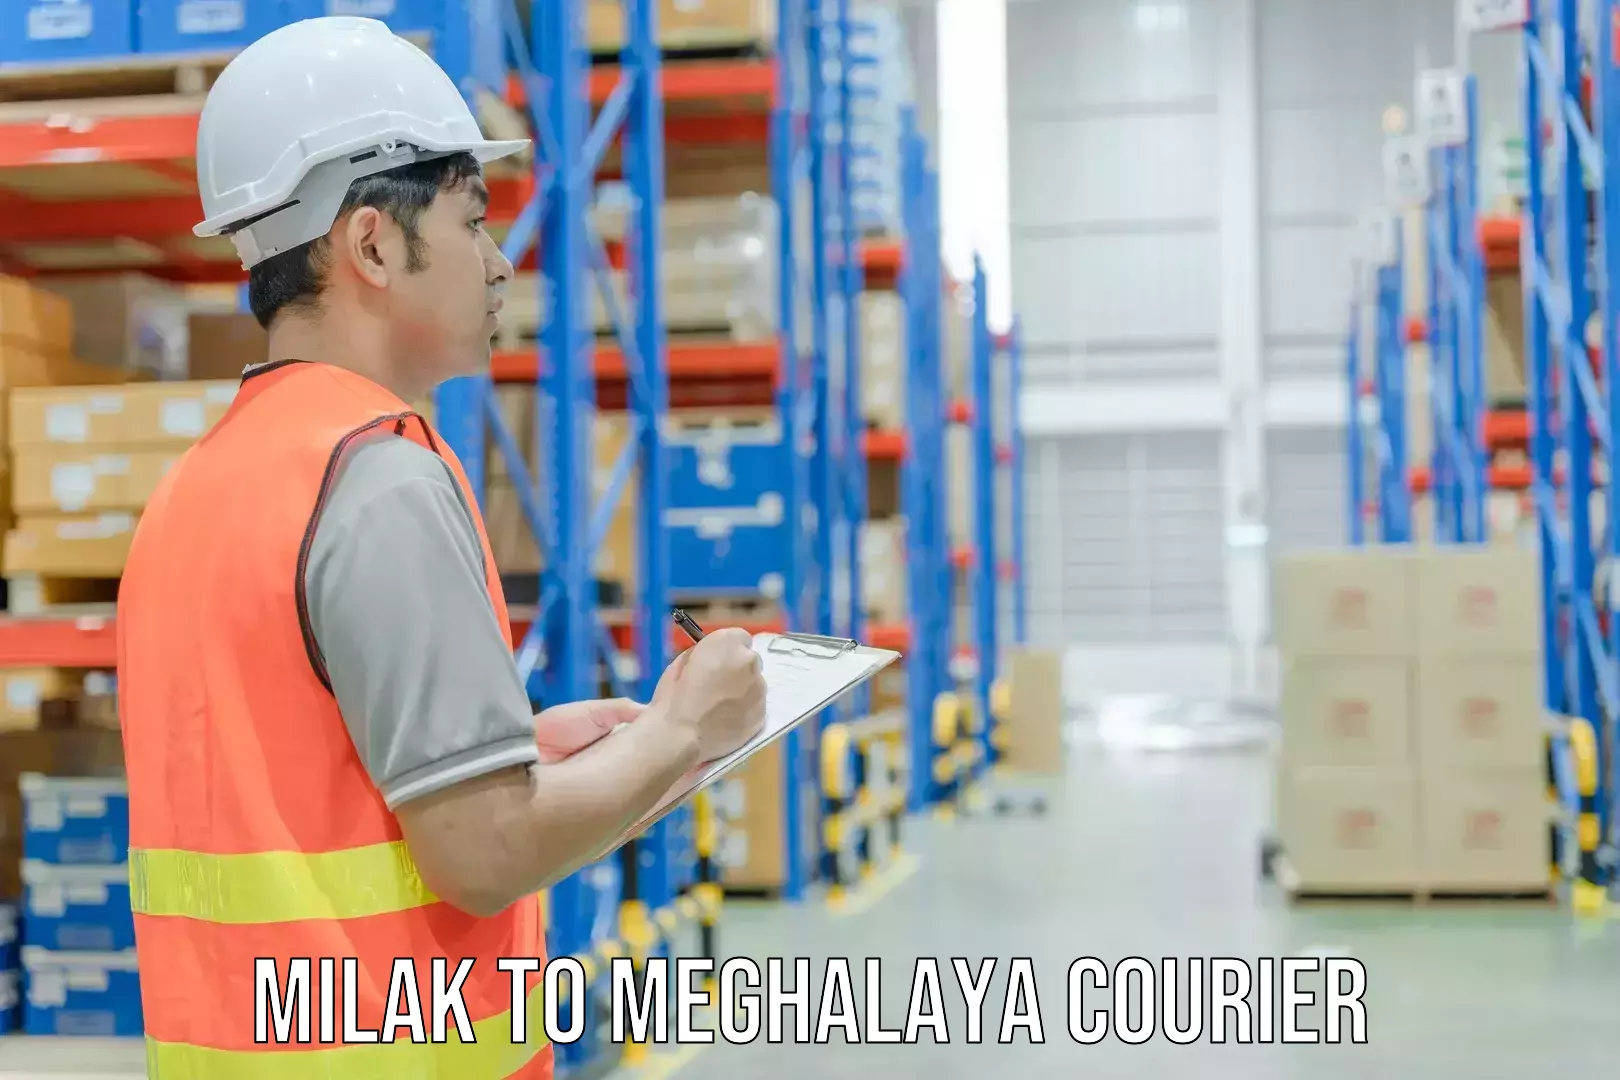 Regular parcel service Milak to Meghalaya